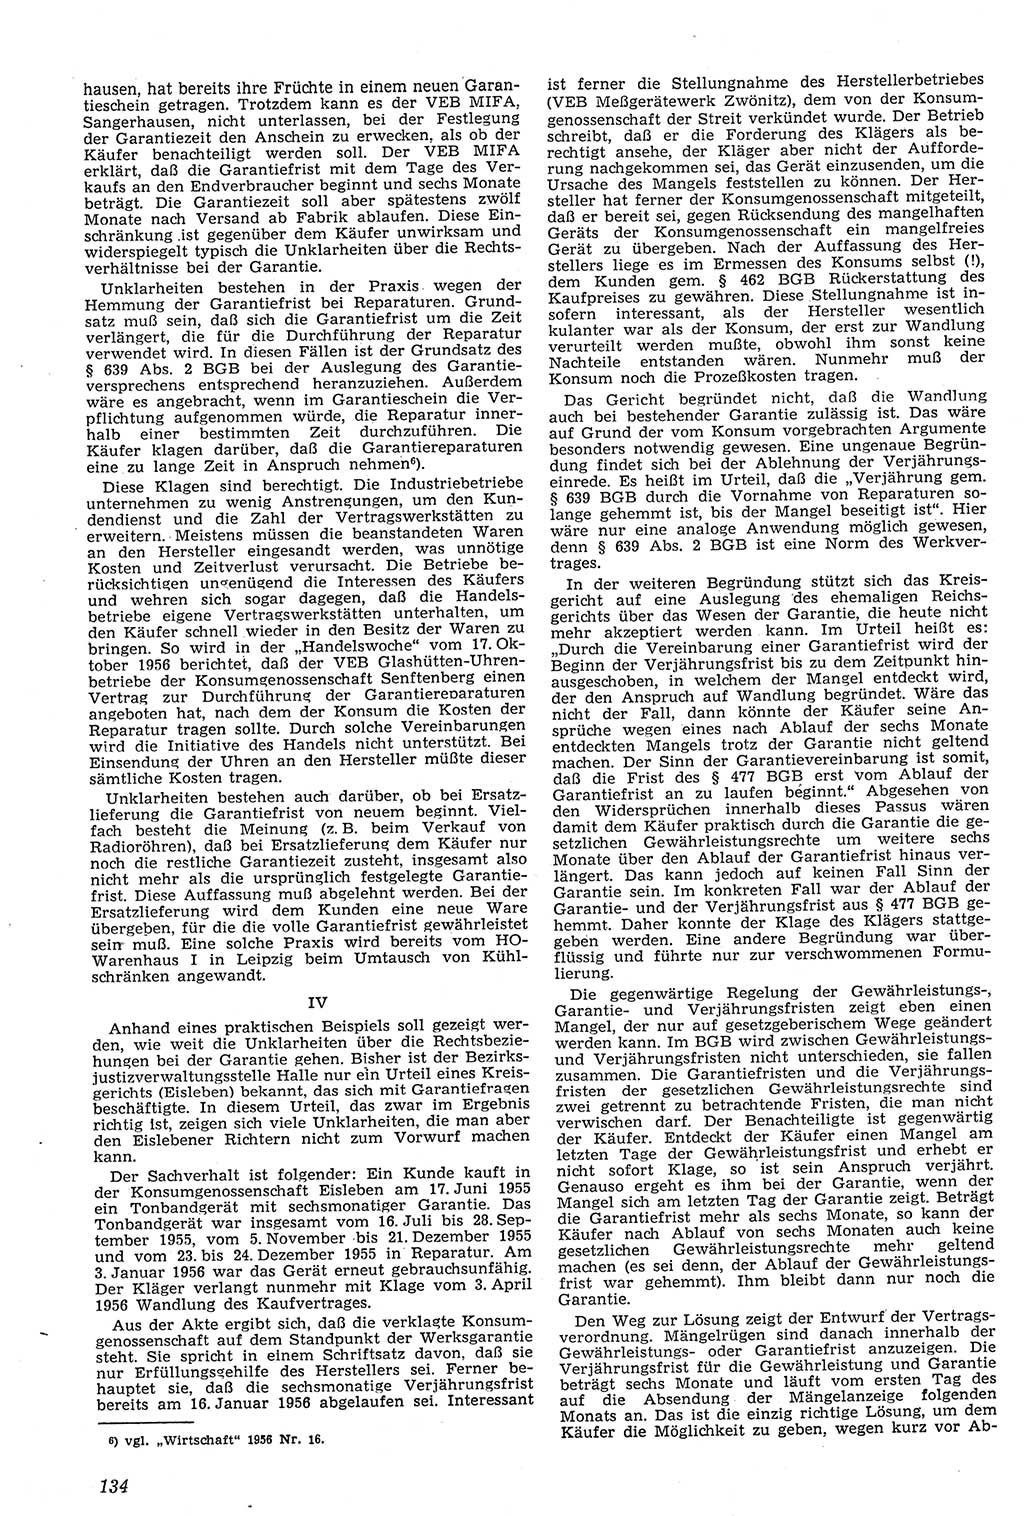 Neue Justiz (NJ), Zeitschrift für Recht und Rechtswissenschaft [Deutsche Demokratische Republik (DDR)], 11. Jahrgang 1957, Seite 134 (NJ DDR 1957, S. 134)